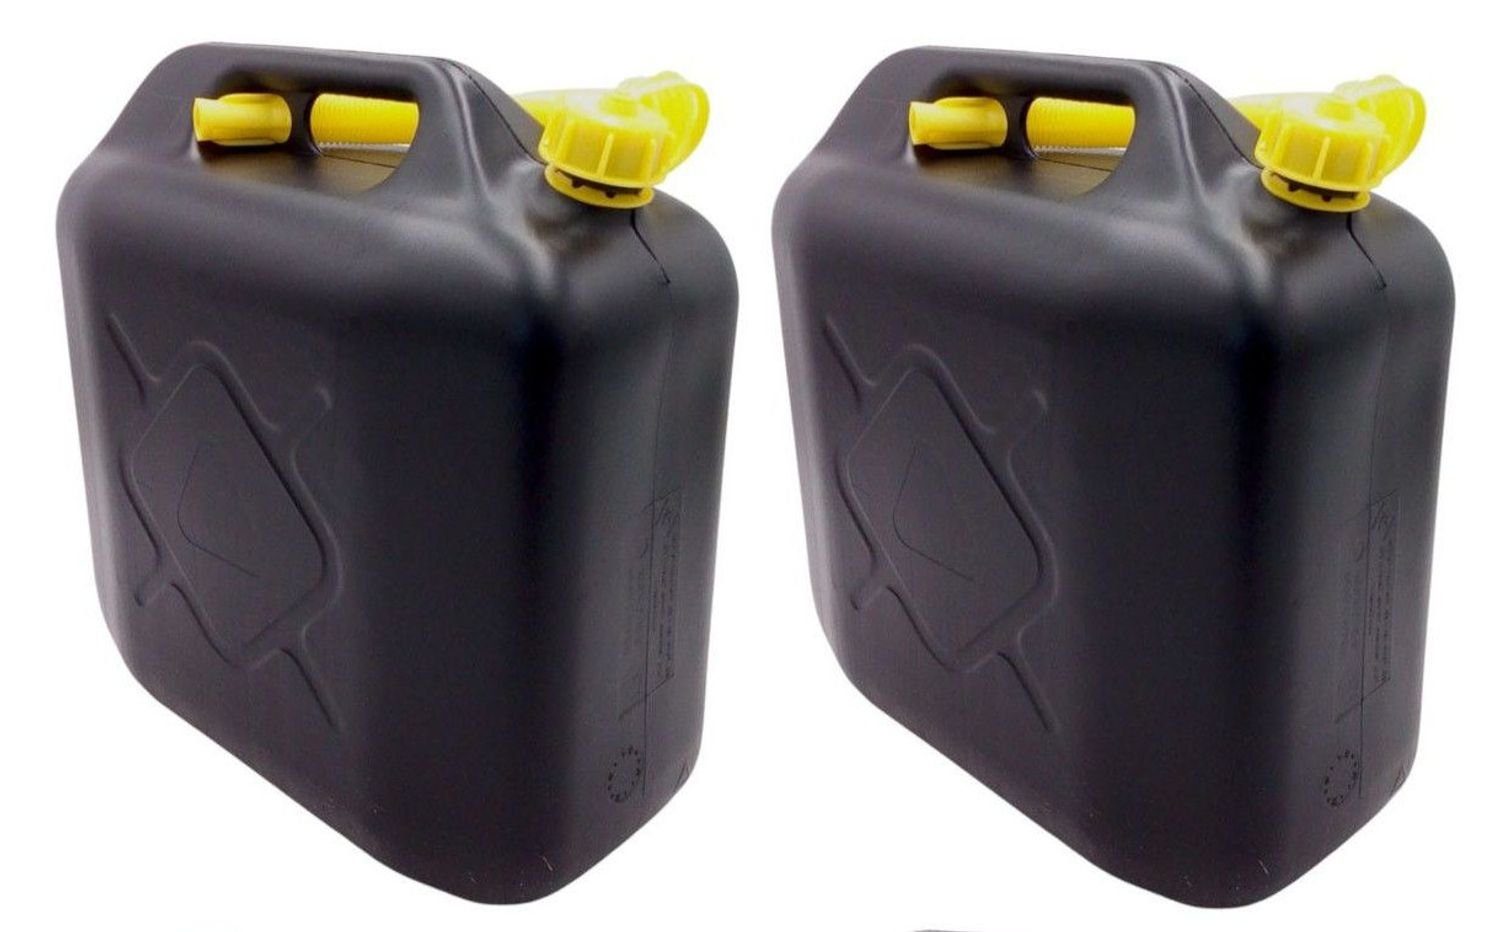 Kraftstoff-Kanister STANDARD 5 L, gelb, HD-PE, UN-Zulassung